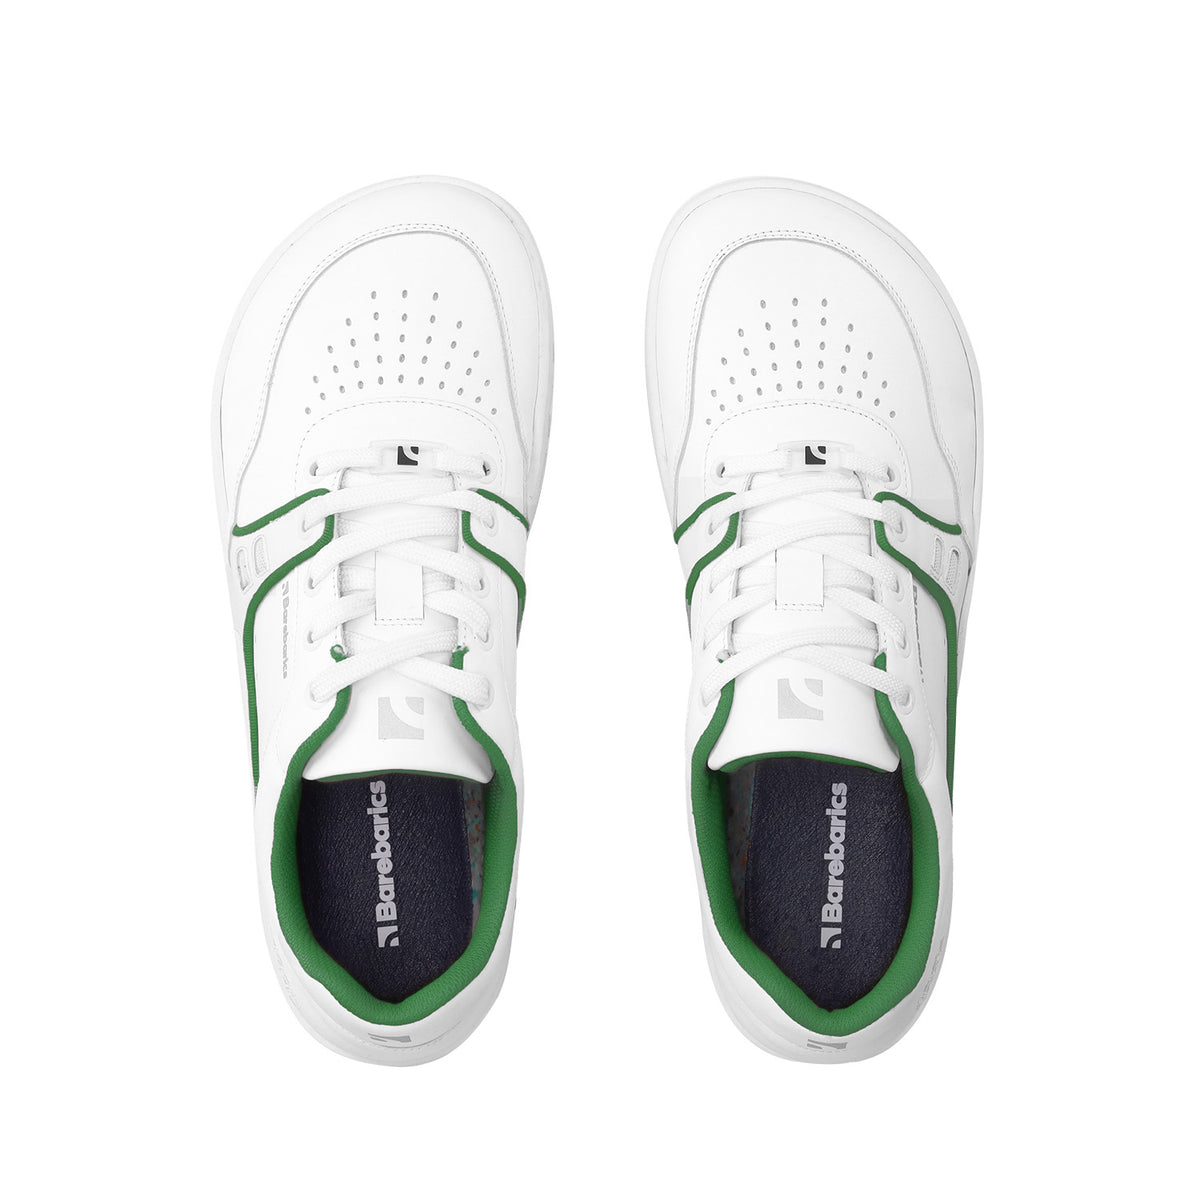 Barefoot Sneakers Barebarics Arise - White & Green 5  - OzBarefoot